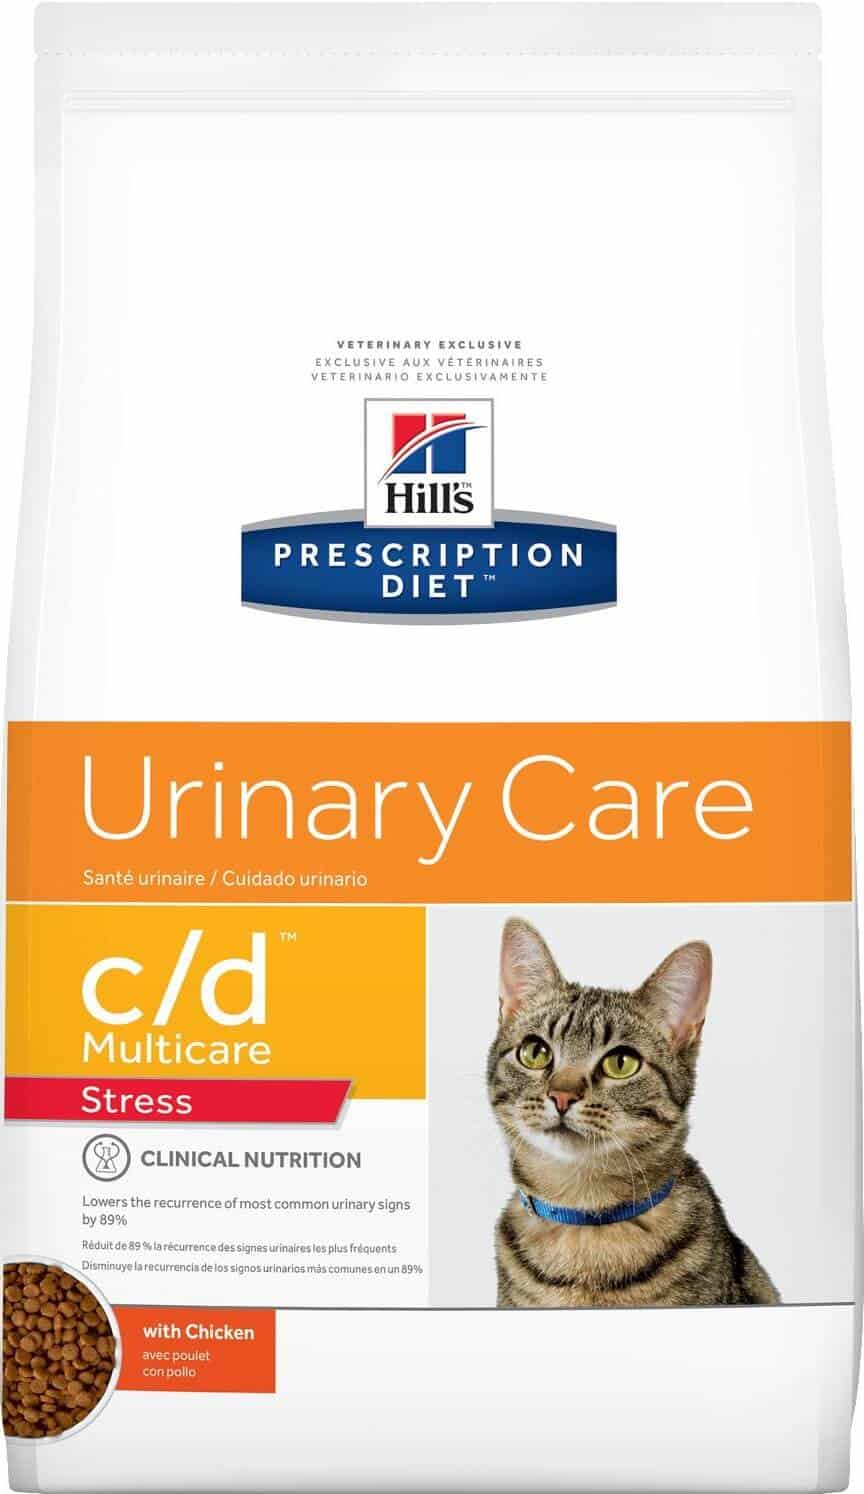 Hills-Prescription-Diet-cd-Adult-Cat-Food